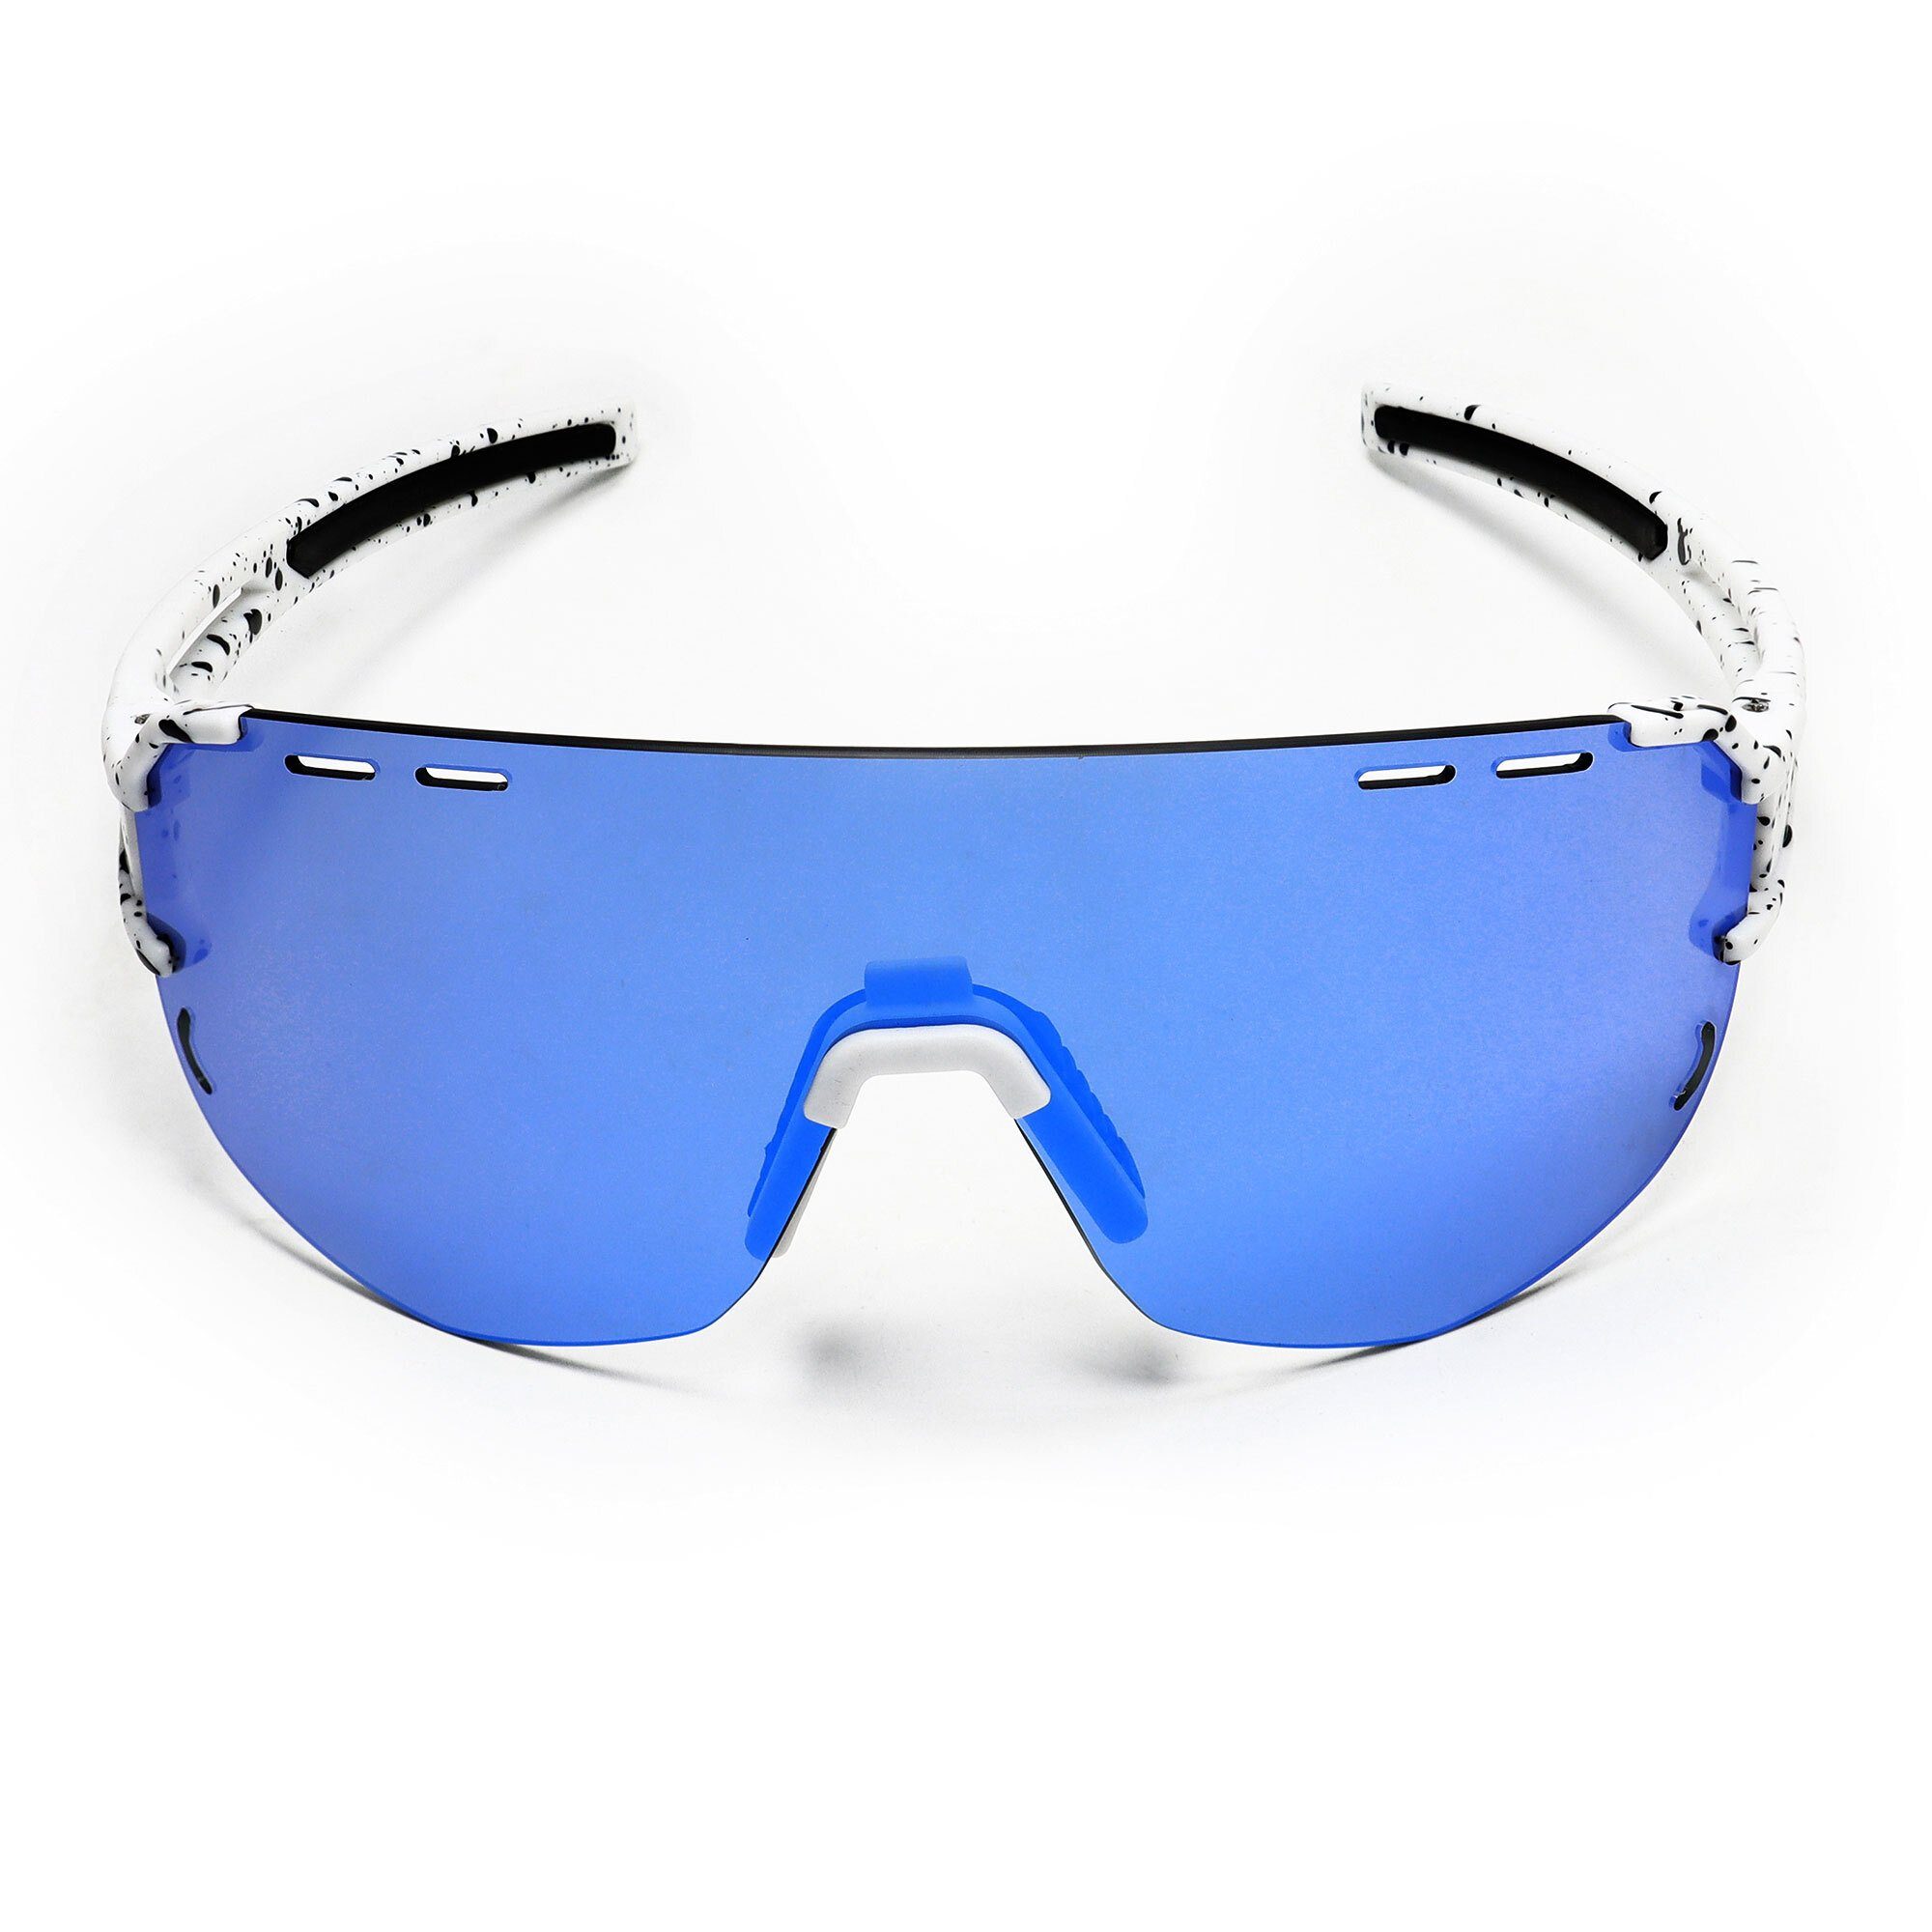 SUNGLOW blau sport-sonnenbrille YEAZ / Sportbrille weiß/blau, Sport-Sonnenbrille weiß